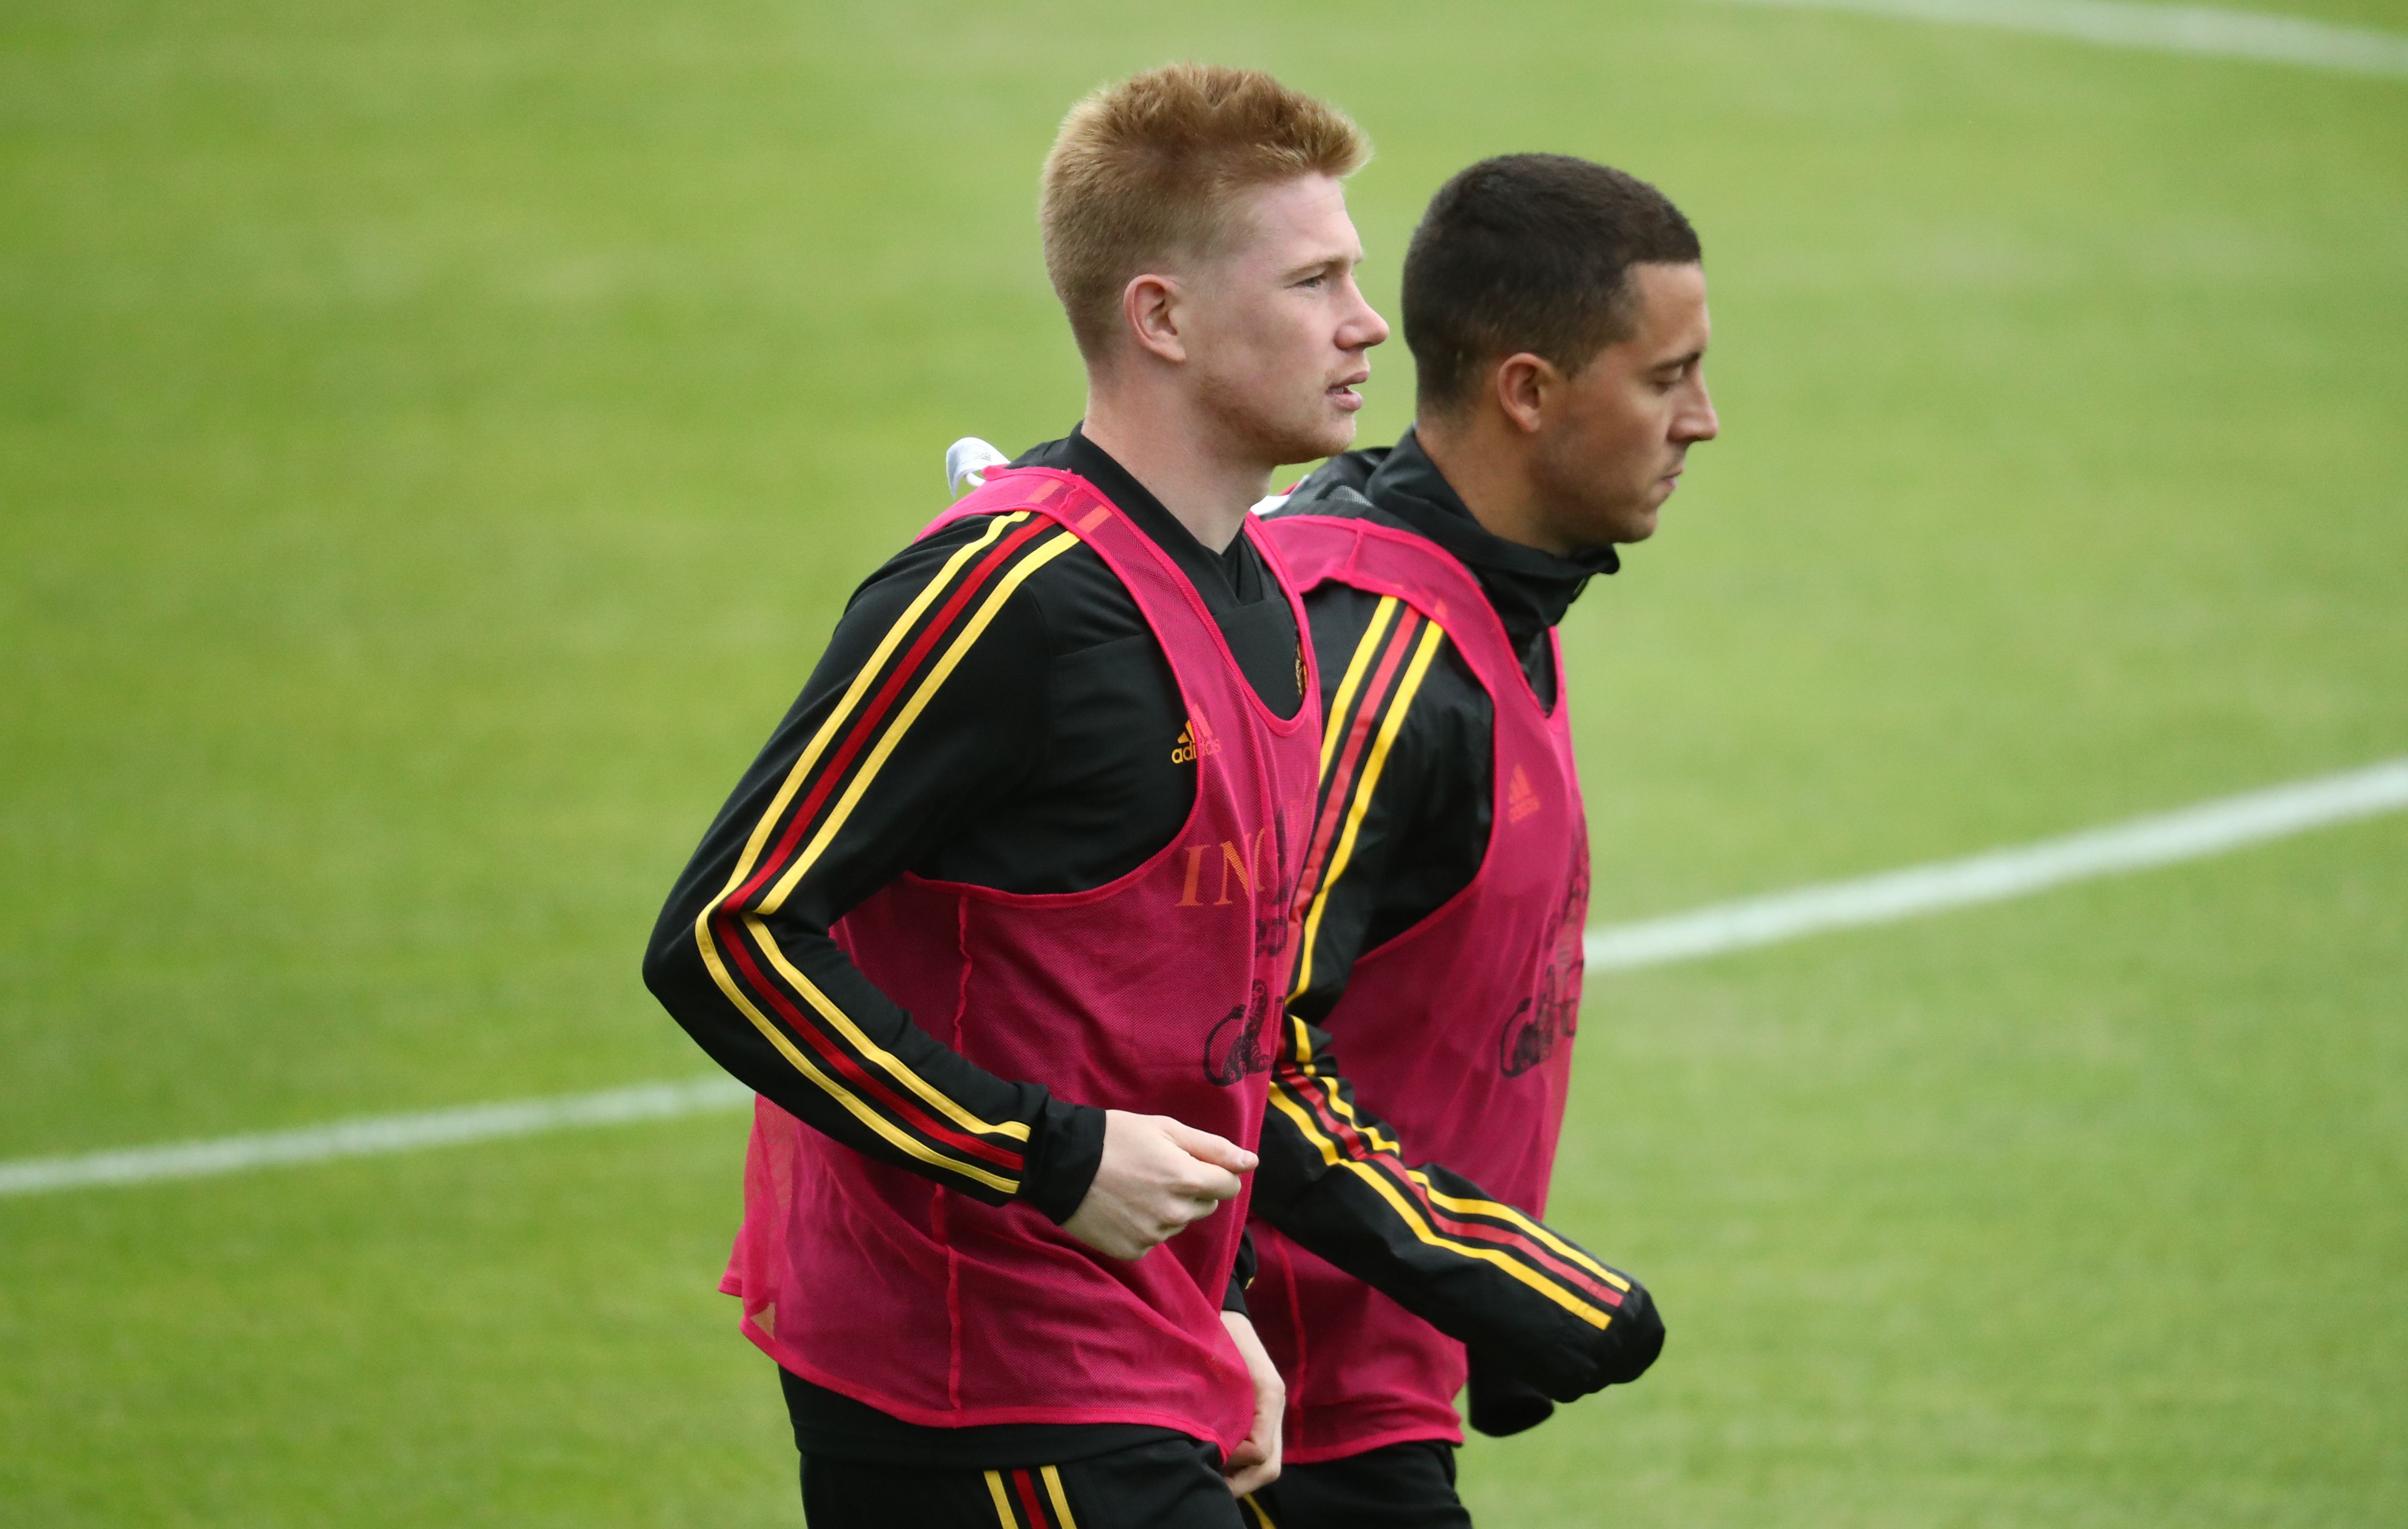 El belga Kevin De Bruyne dice que su compañero Eden Hazard puede hacer un gran trabajo en cualquier equipo. (Foto Prensa Libre: AFP)